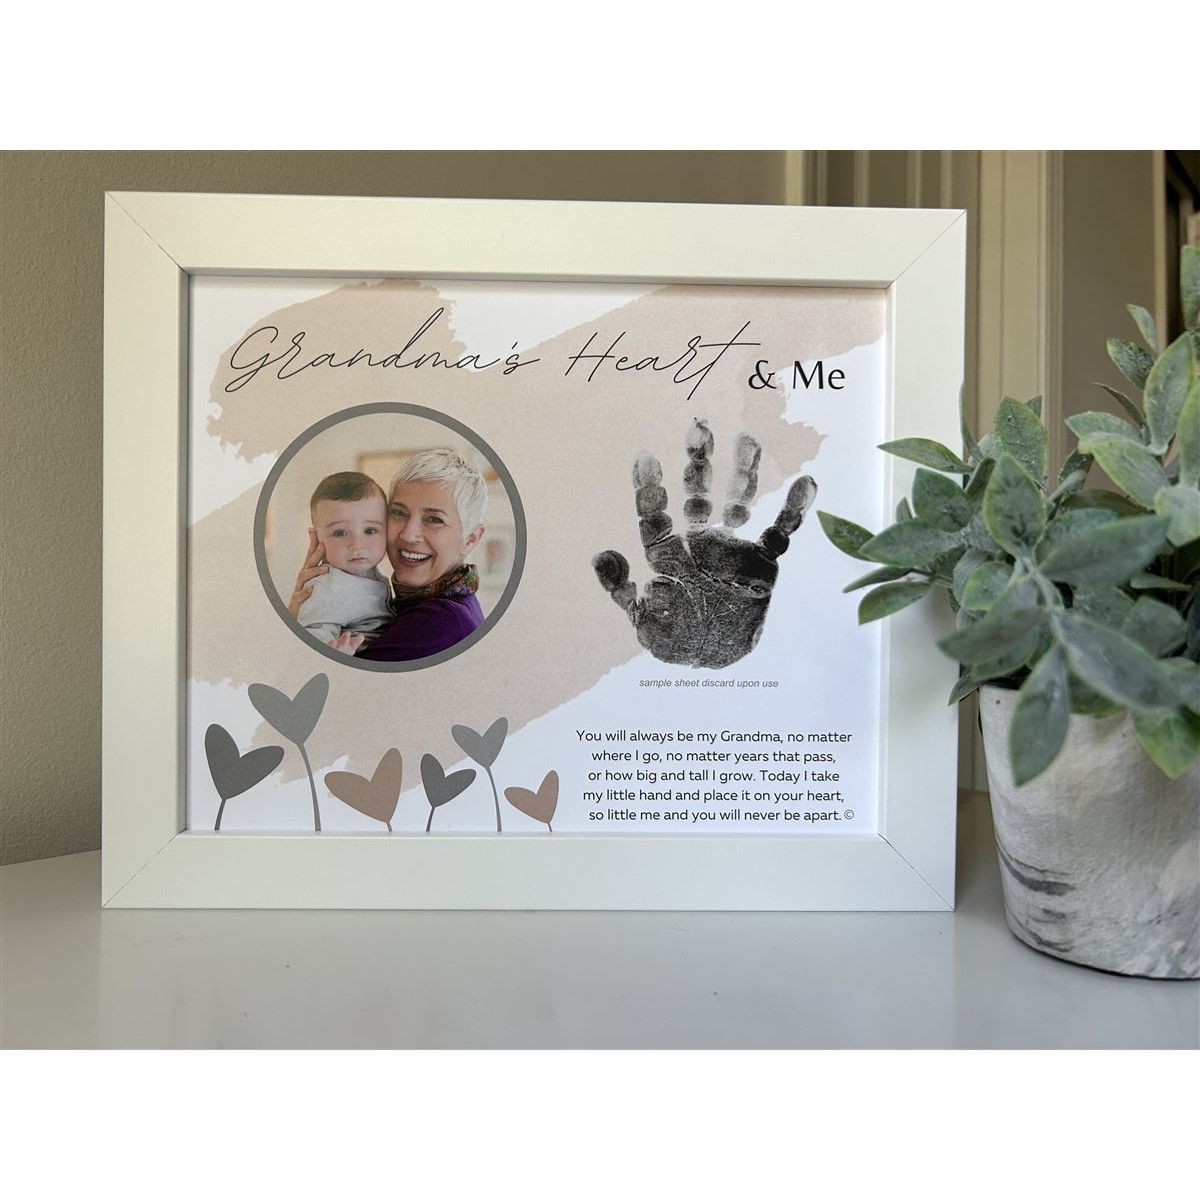 Grandma Handprint Frame: Heart and Me